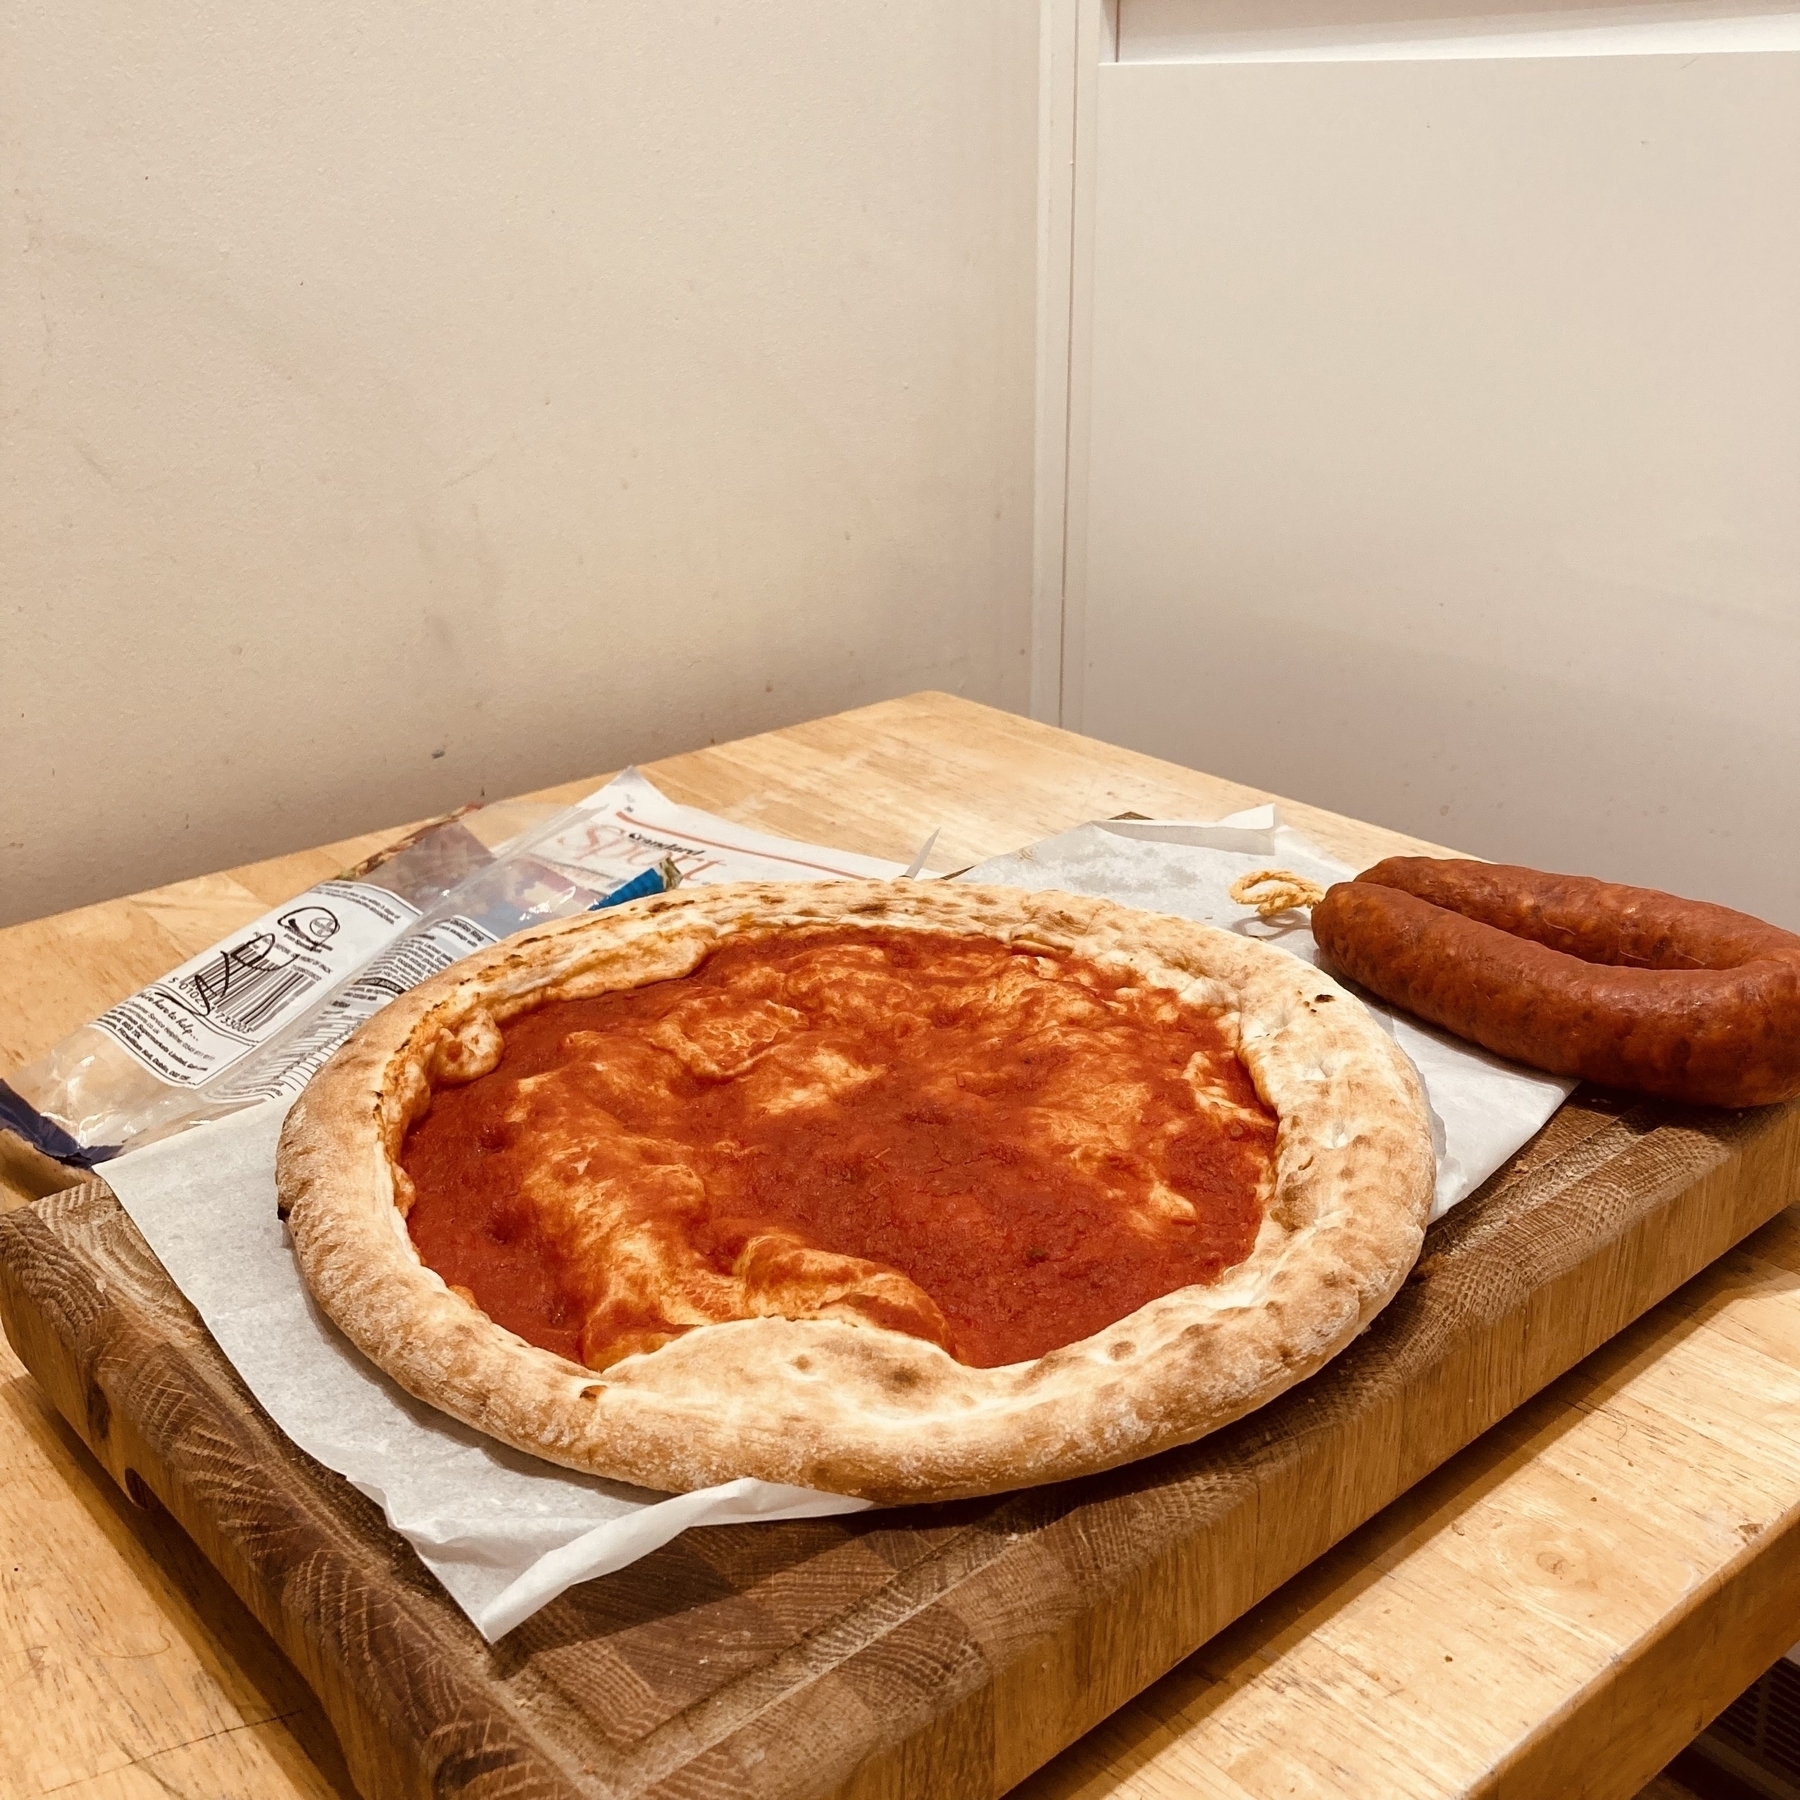 Pizza base and uncut Chorizo